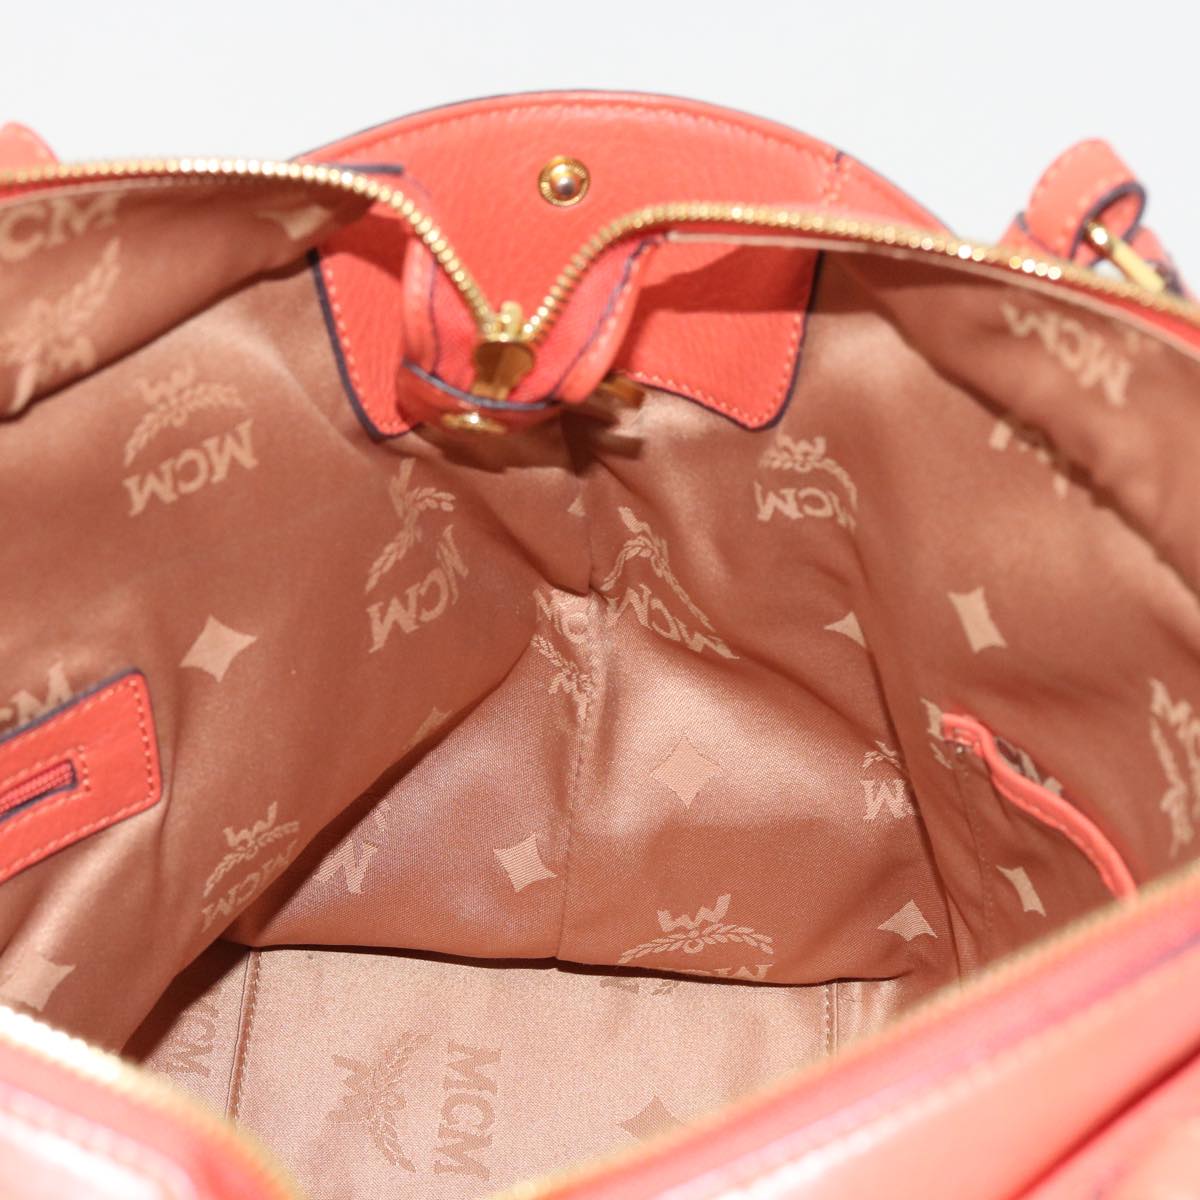 MCM Shoulder Bag Leather 2way Orange Auth bs9215